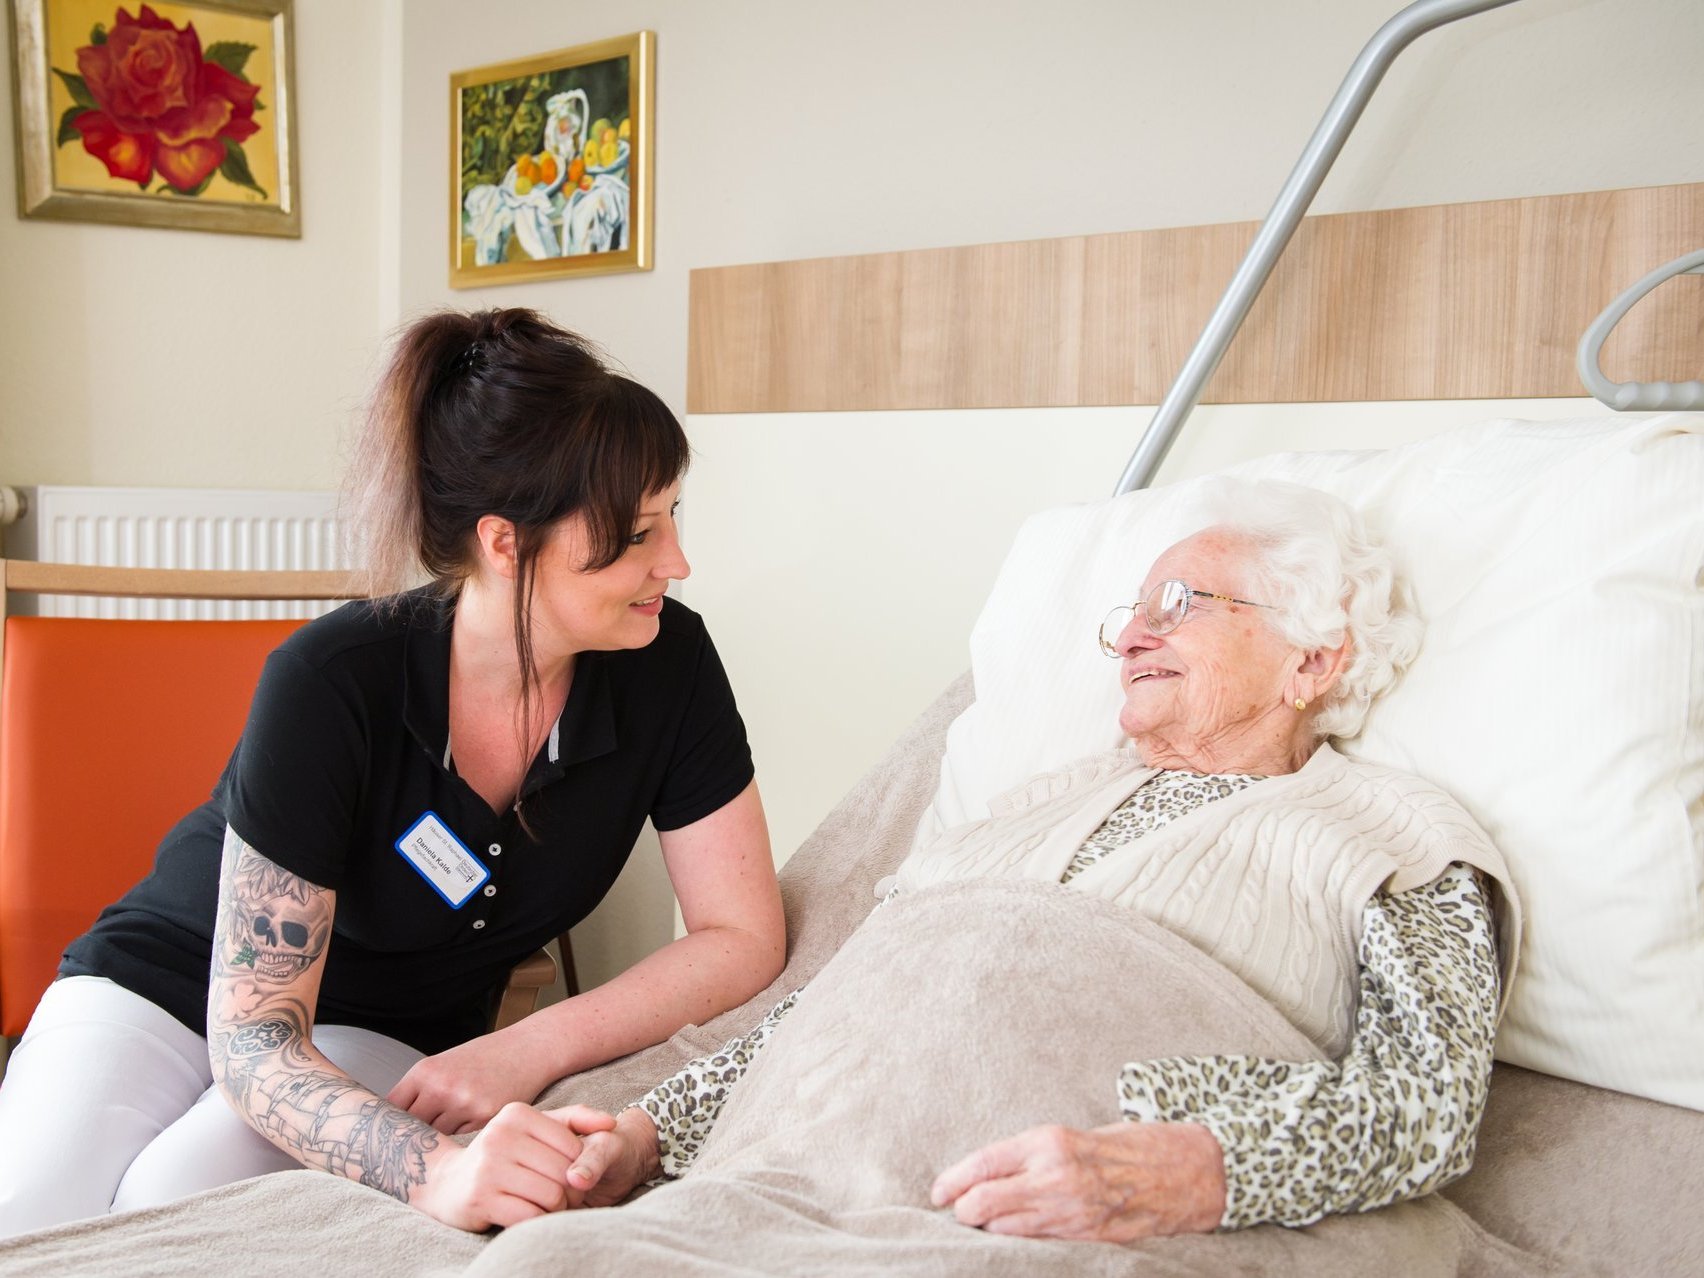 Eine junge Pflegerin kümmert sich um eine weisshaarige Frau, die in einem Krankenbett liegt - sie halten Hand und lächeln sich an